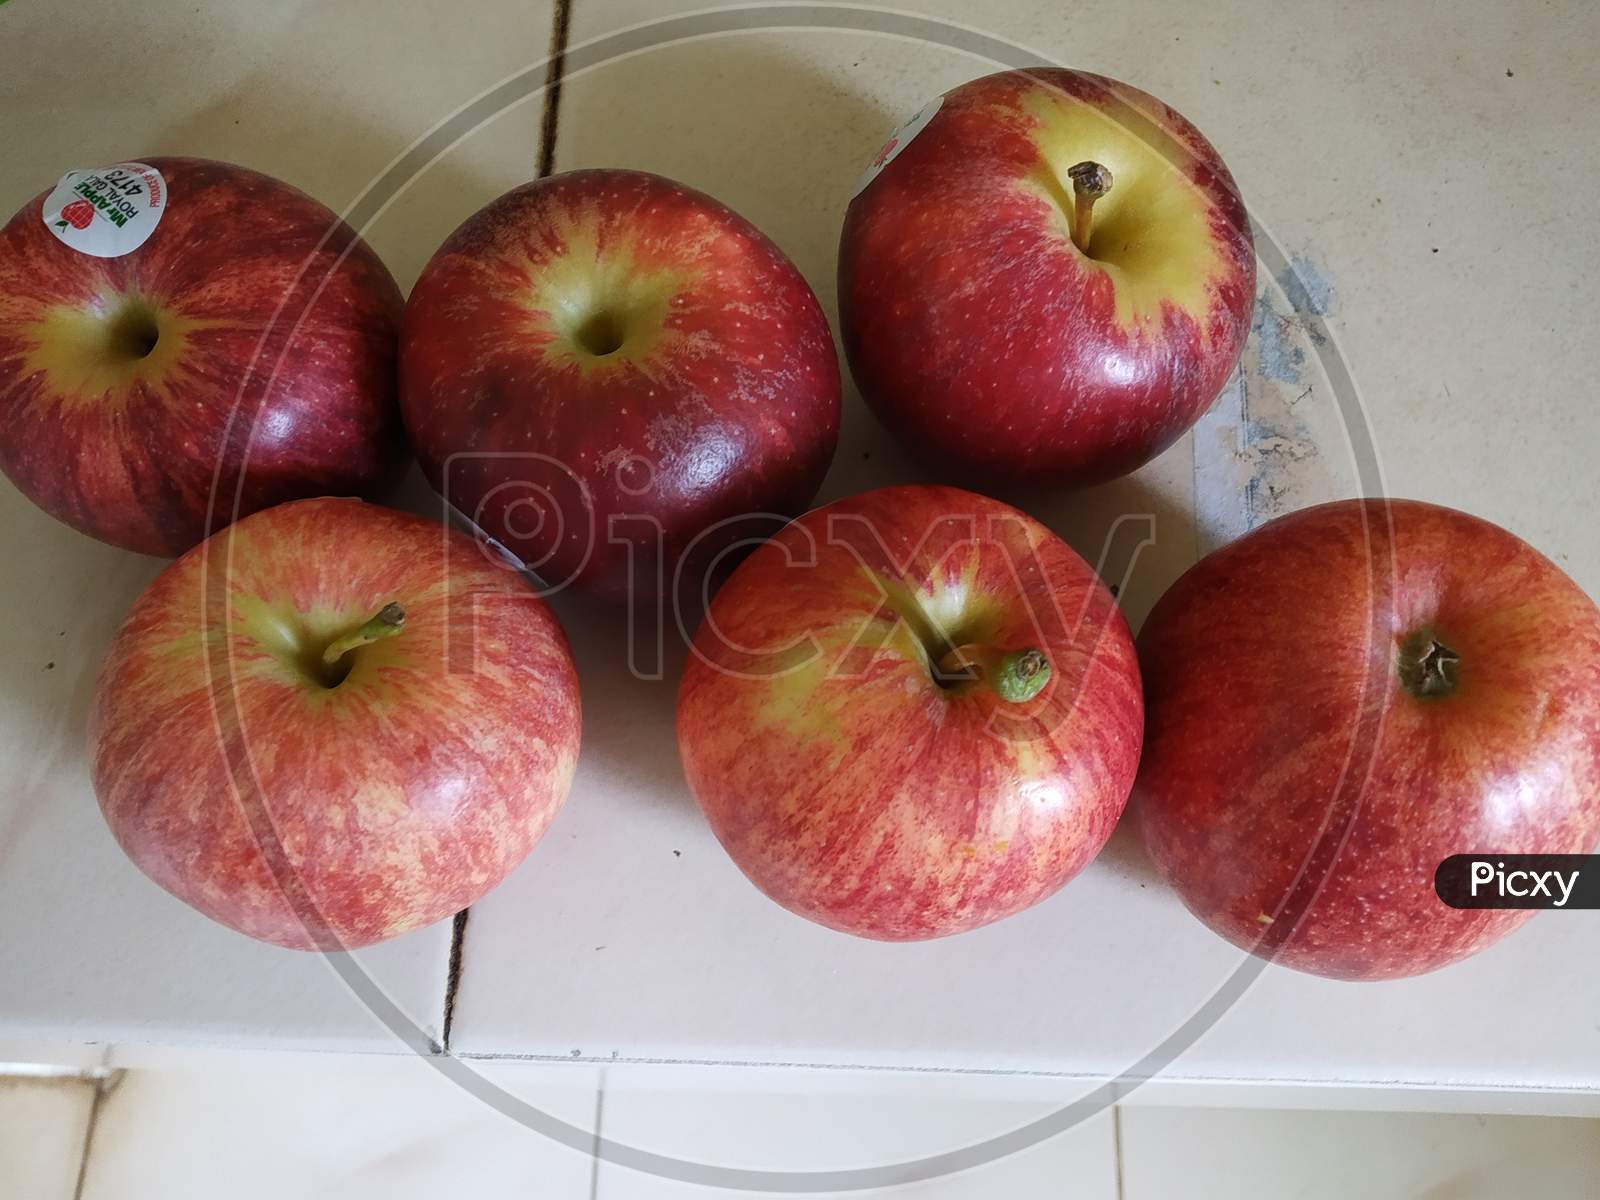 Apples kept together